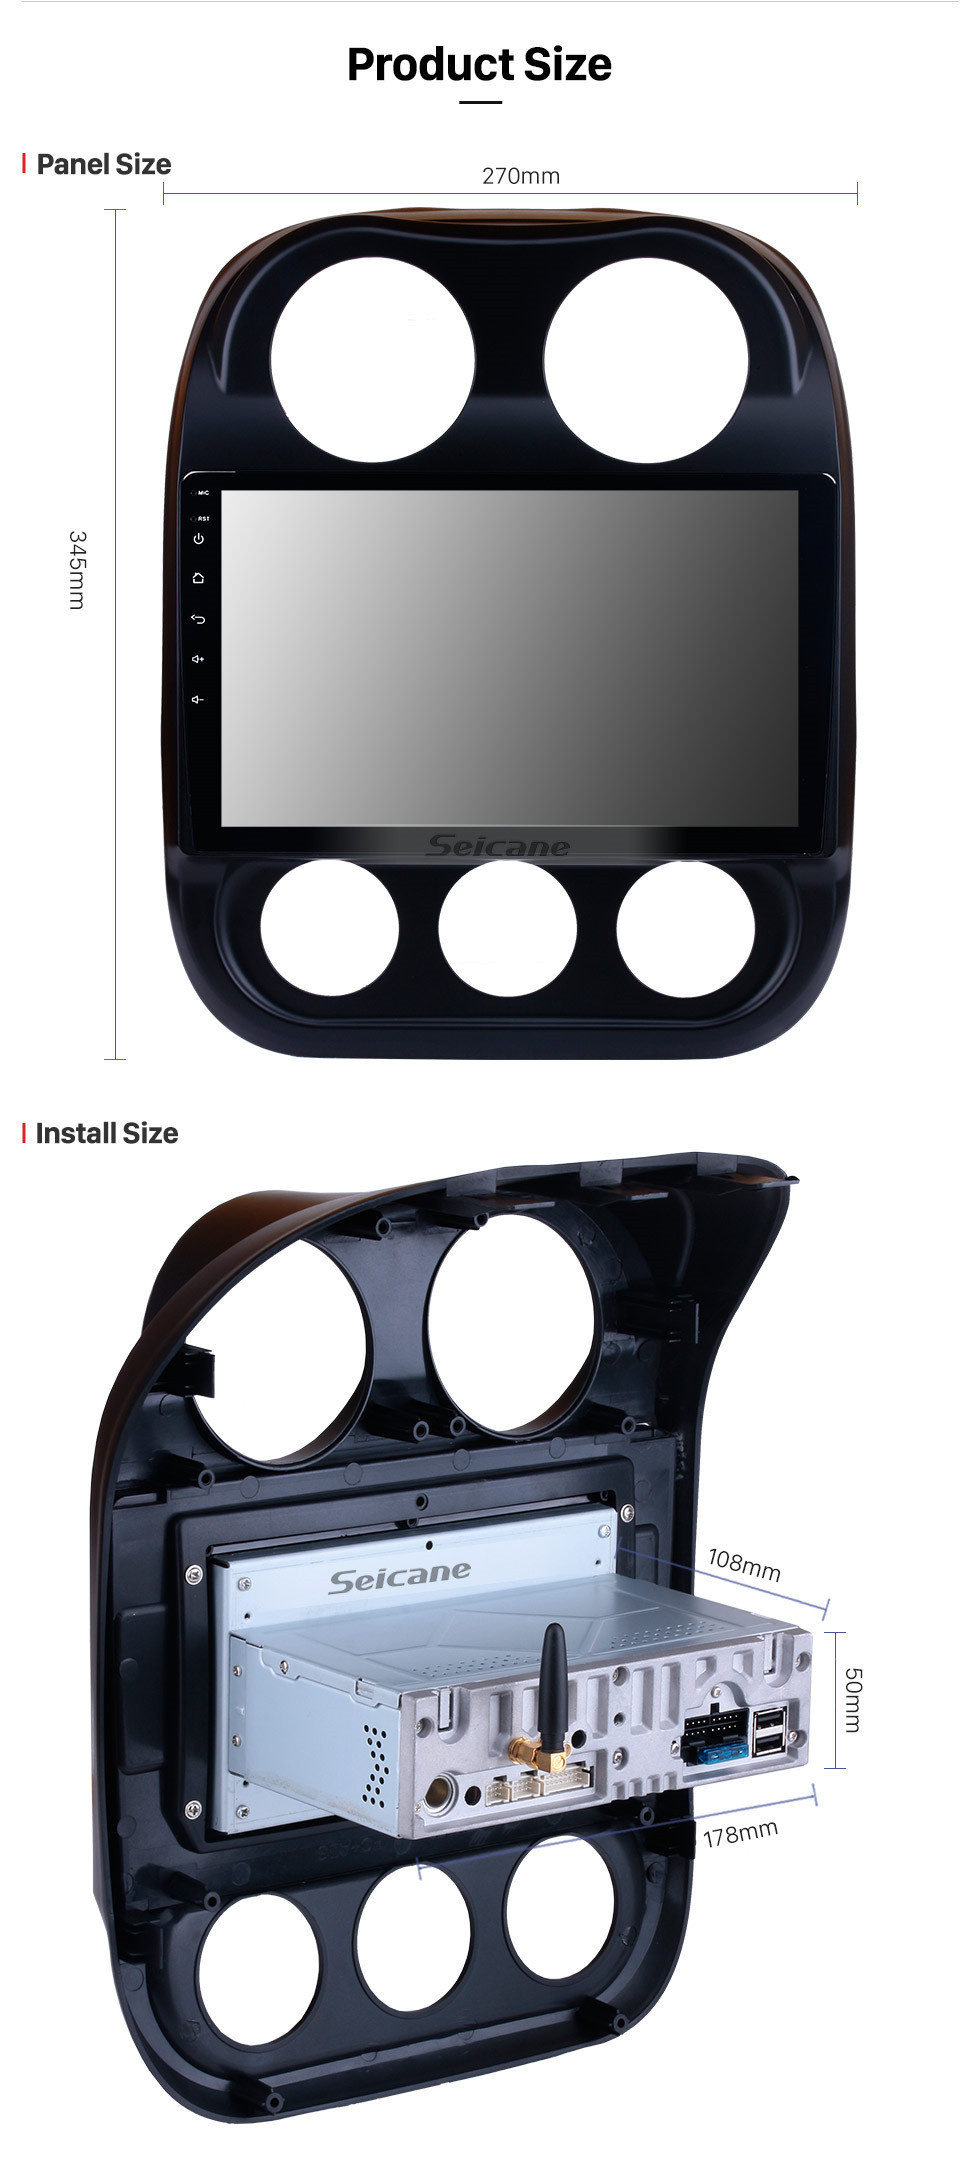 Seicane 10.1 Inch Android 11.0 Touch Screen Radio Bluetooth GPS Sistema de navegação Para 2014 2015 Jeep Compass suporte TPMS DVR OBD II USB SD 3G WiFi Câmera traseira Controle do volante HD 1080P Vídeo AUX